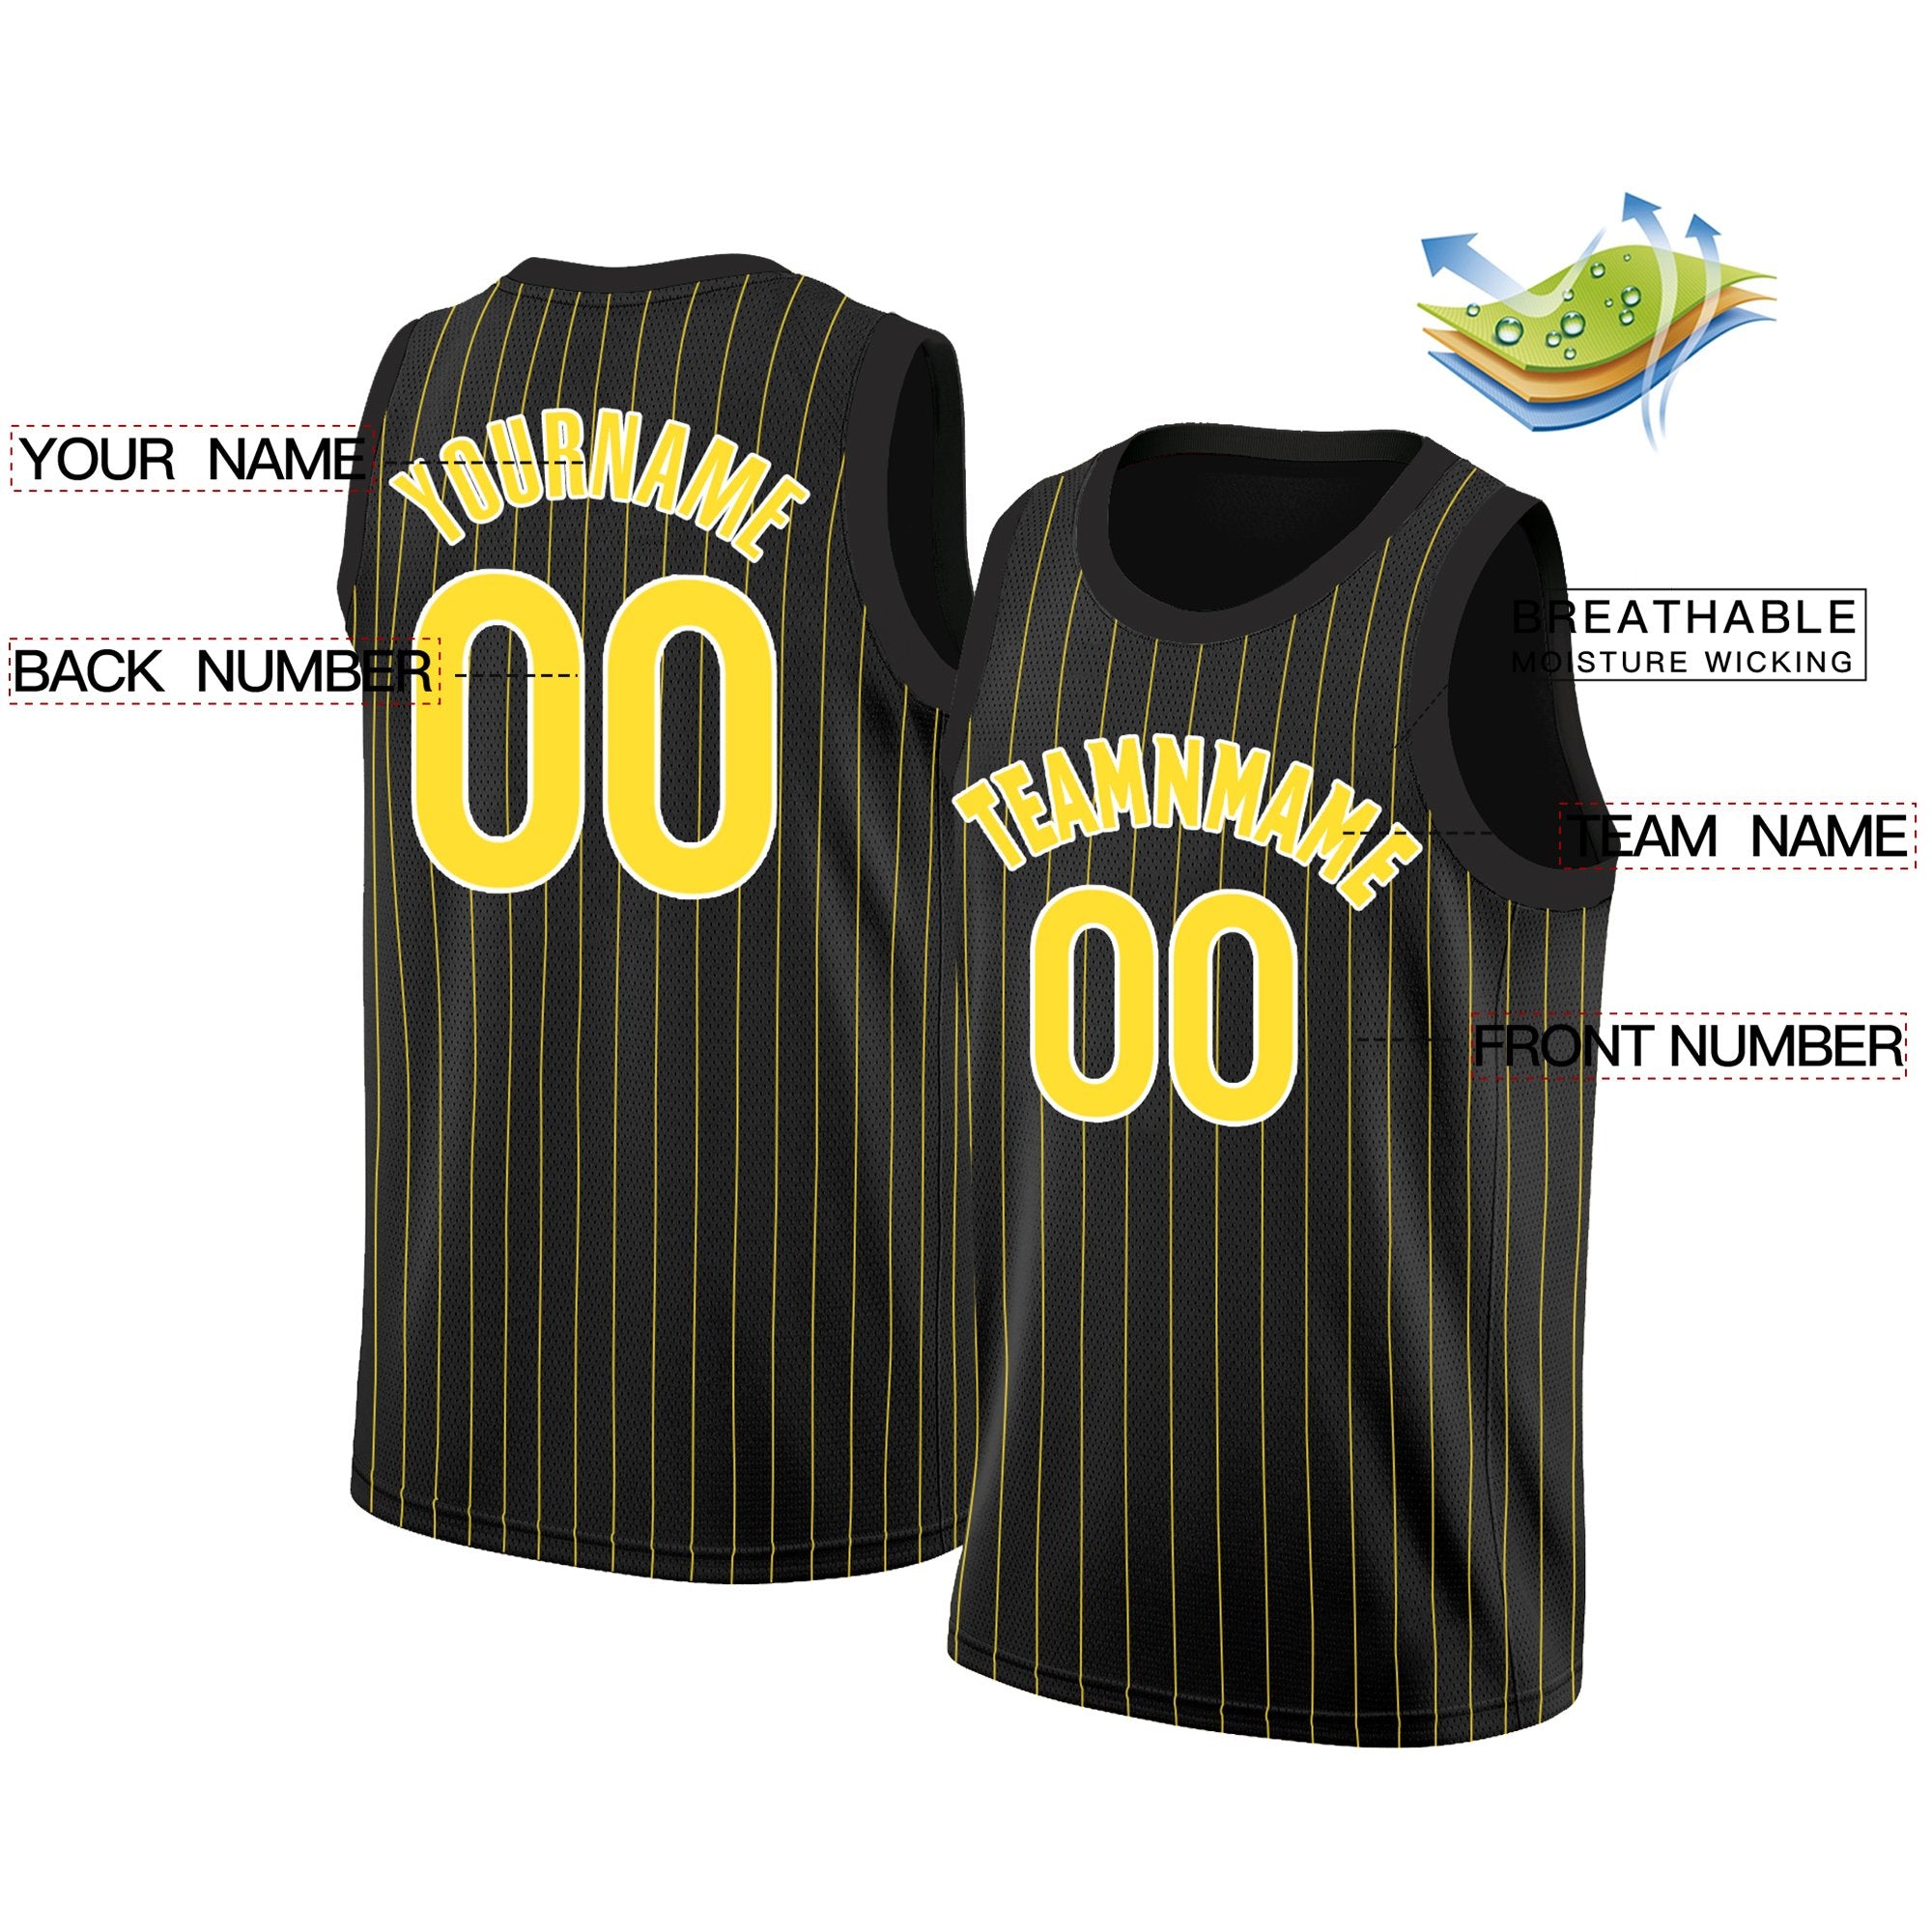 KXK Black and Yellow Basketball Jersey, Basketball Yellow Jersey - KXKSHOP